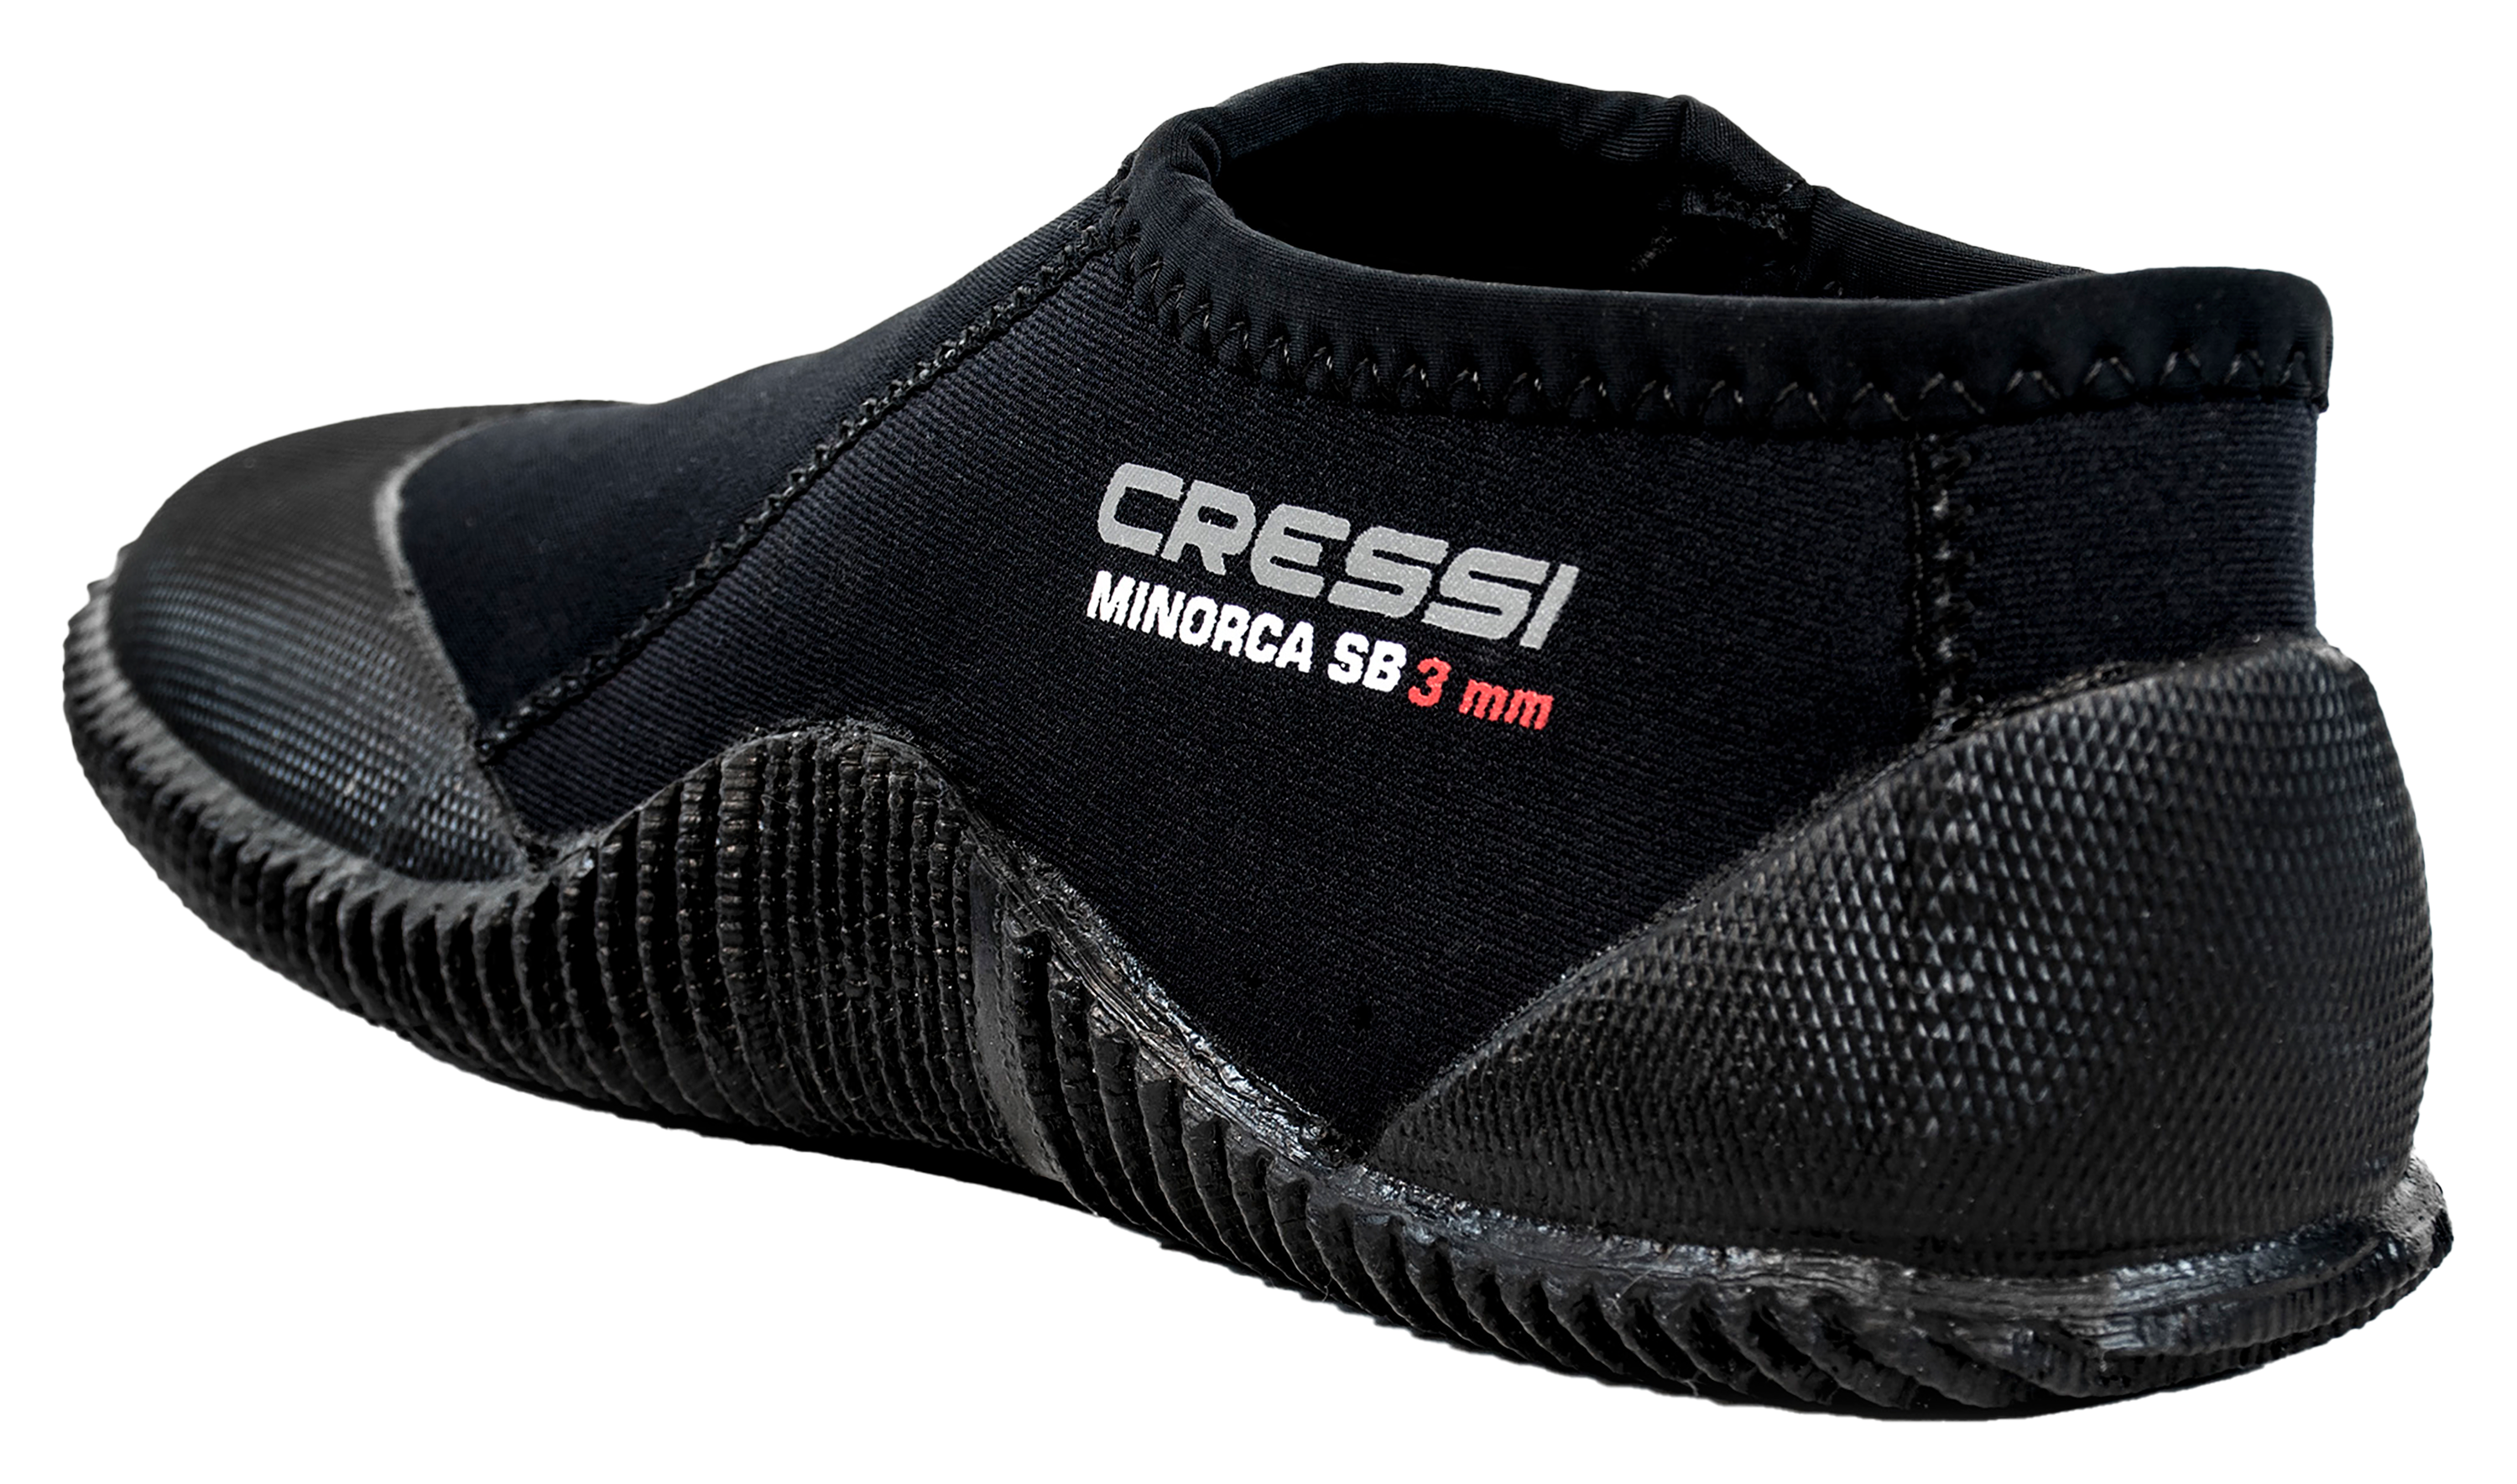 Cressi Minorca Short Boots for Men - Black - 12